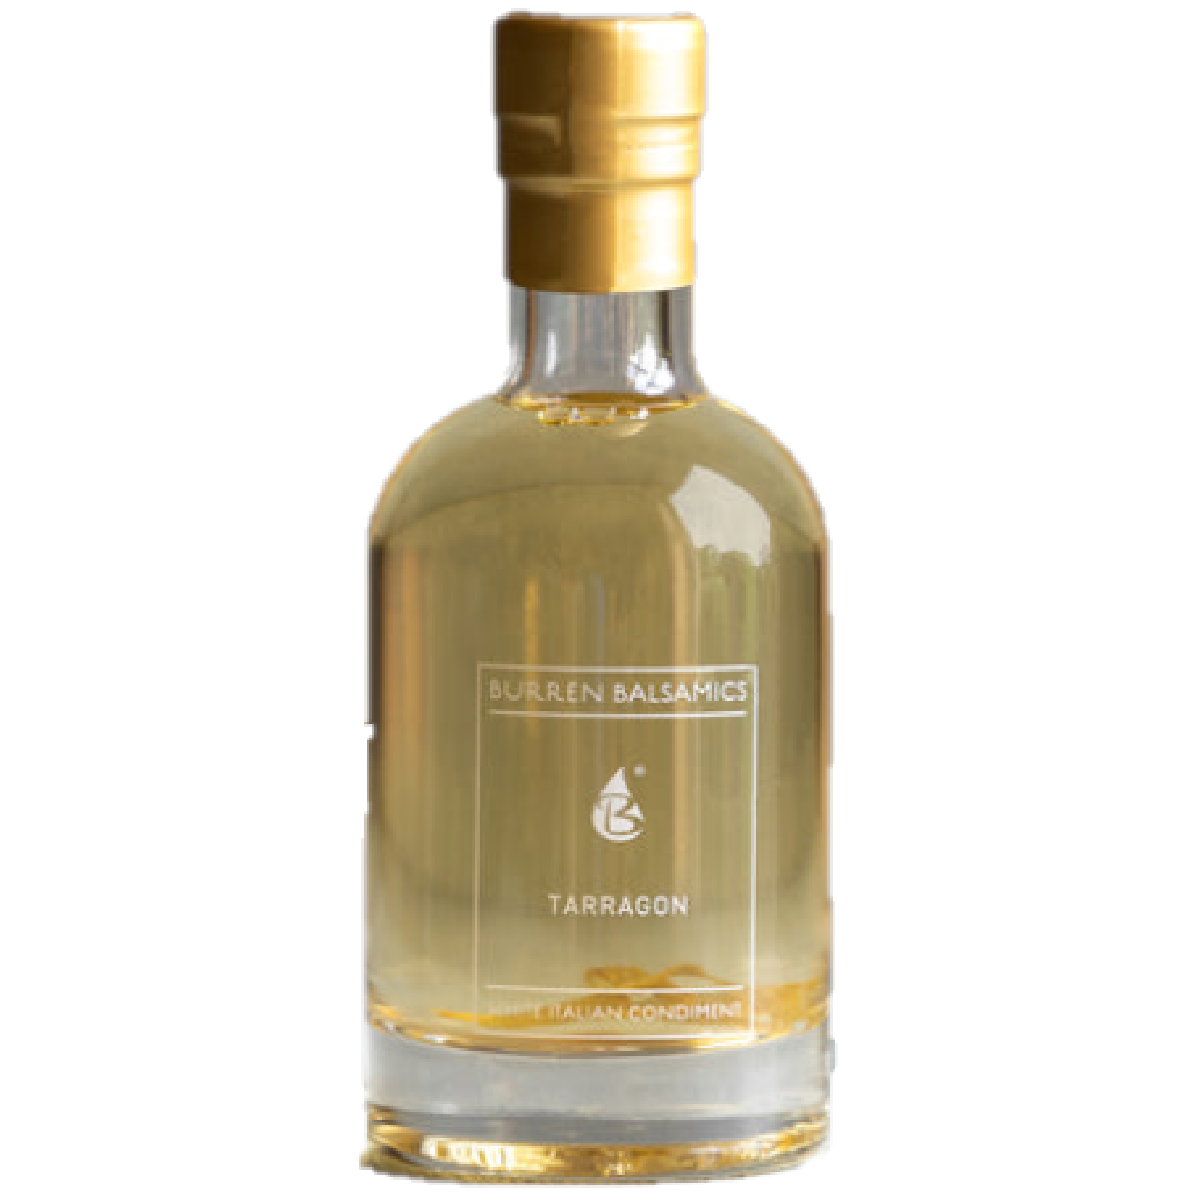 Burren Balsamic Tarragon Infused White Balsamic Vinegar 100ml